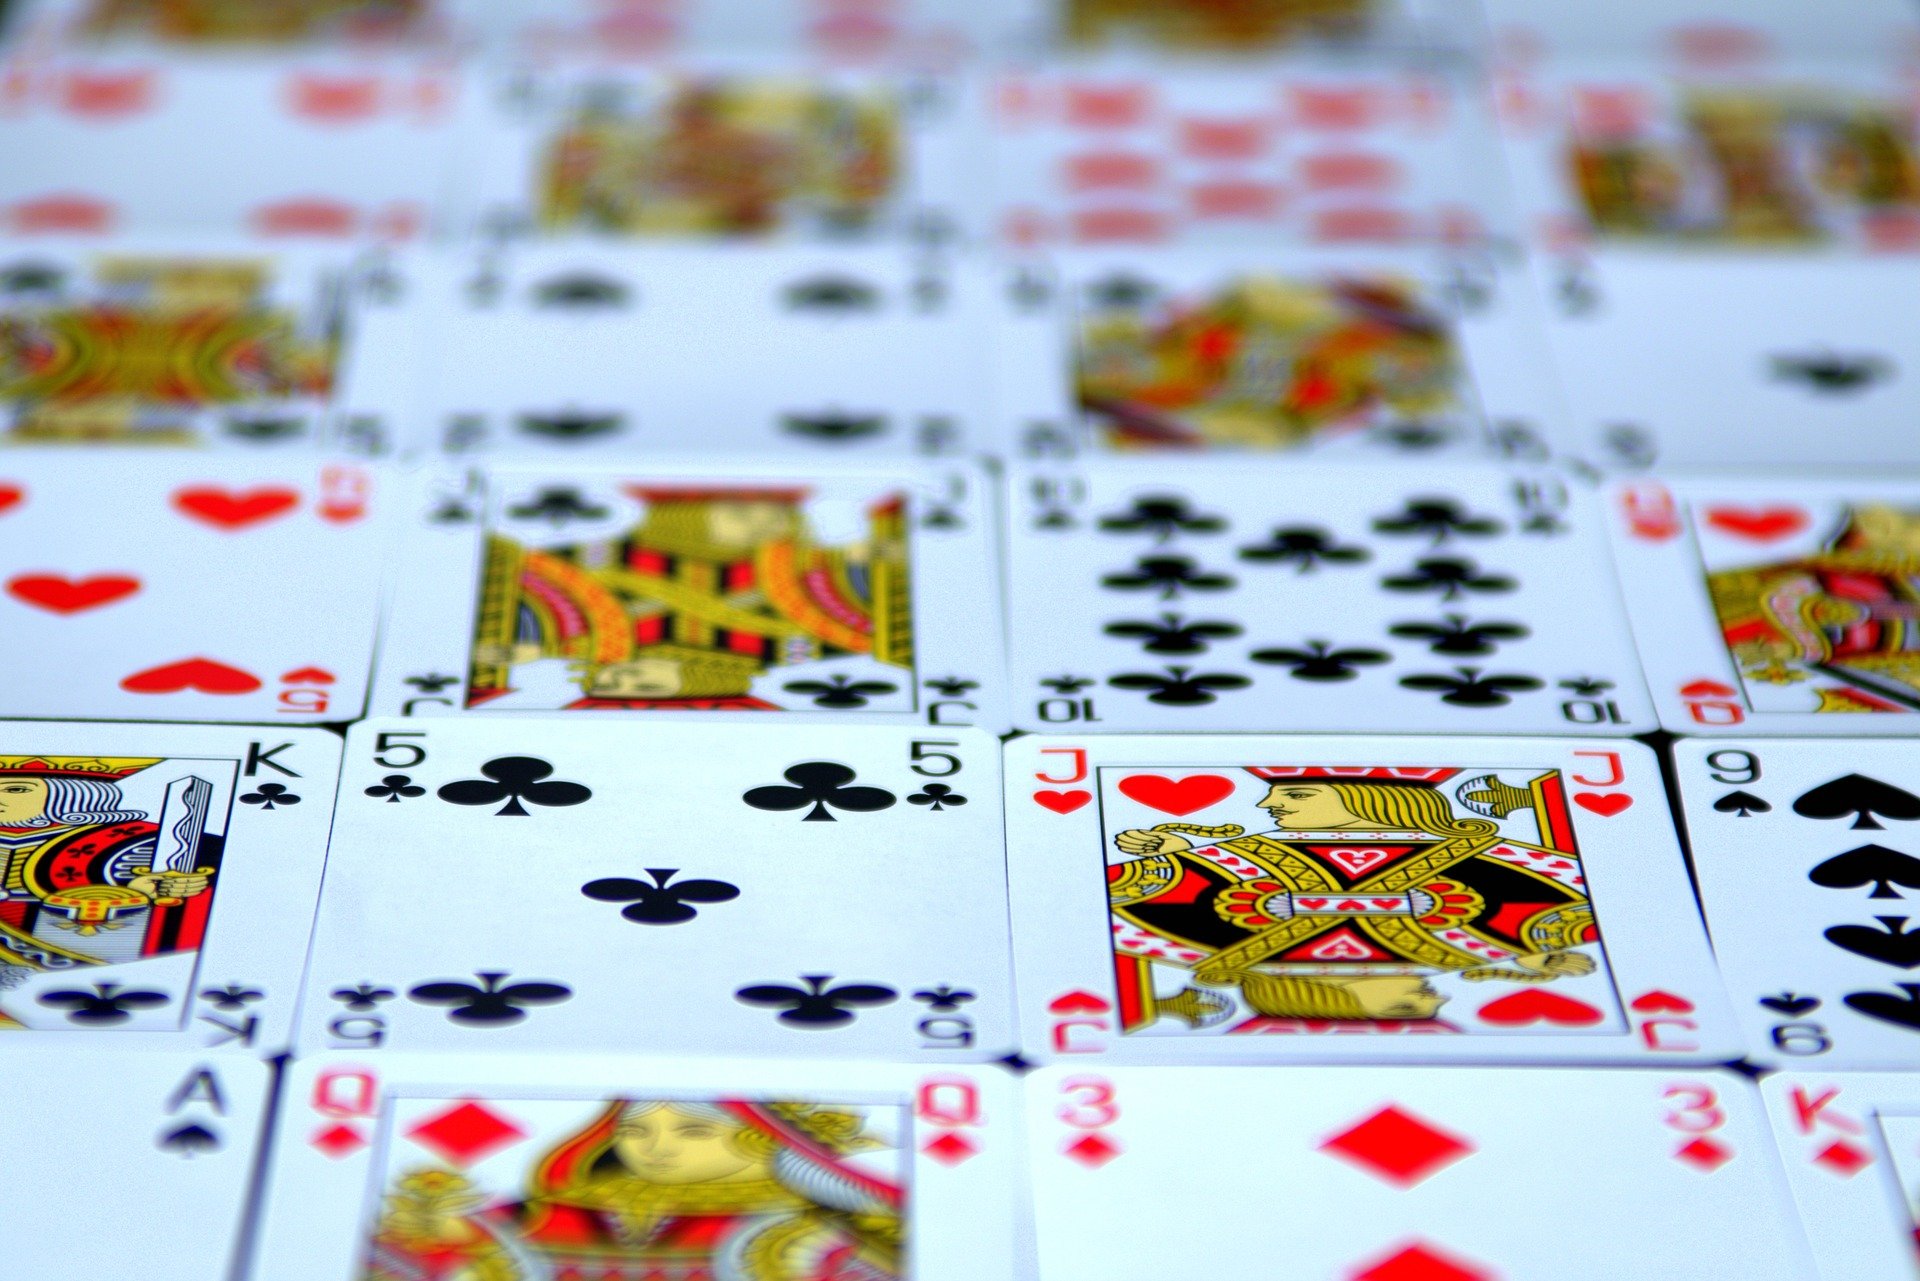 permainan dominobet atau dominoqq, poker qq online yang mudah menang dan terpercaya di Indonesia